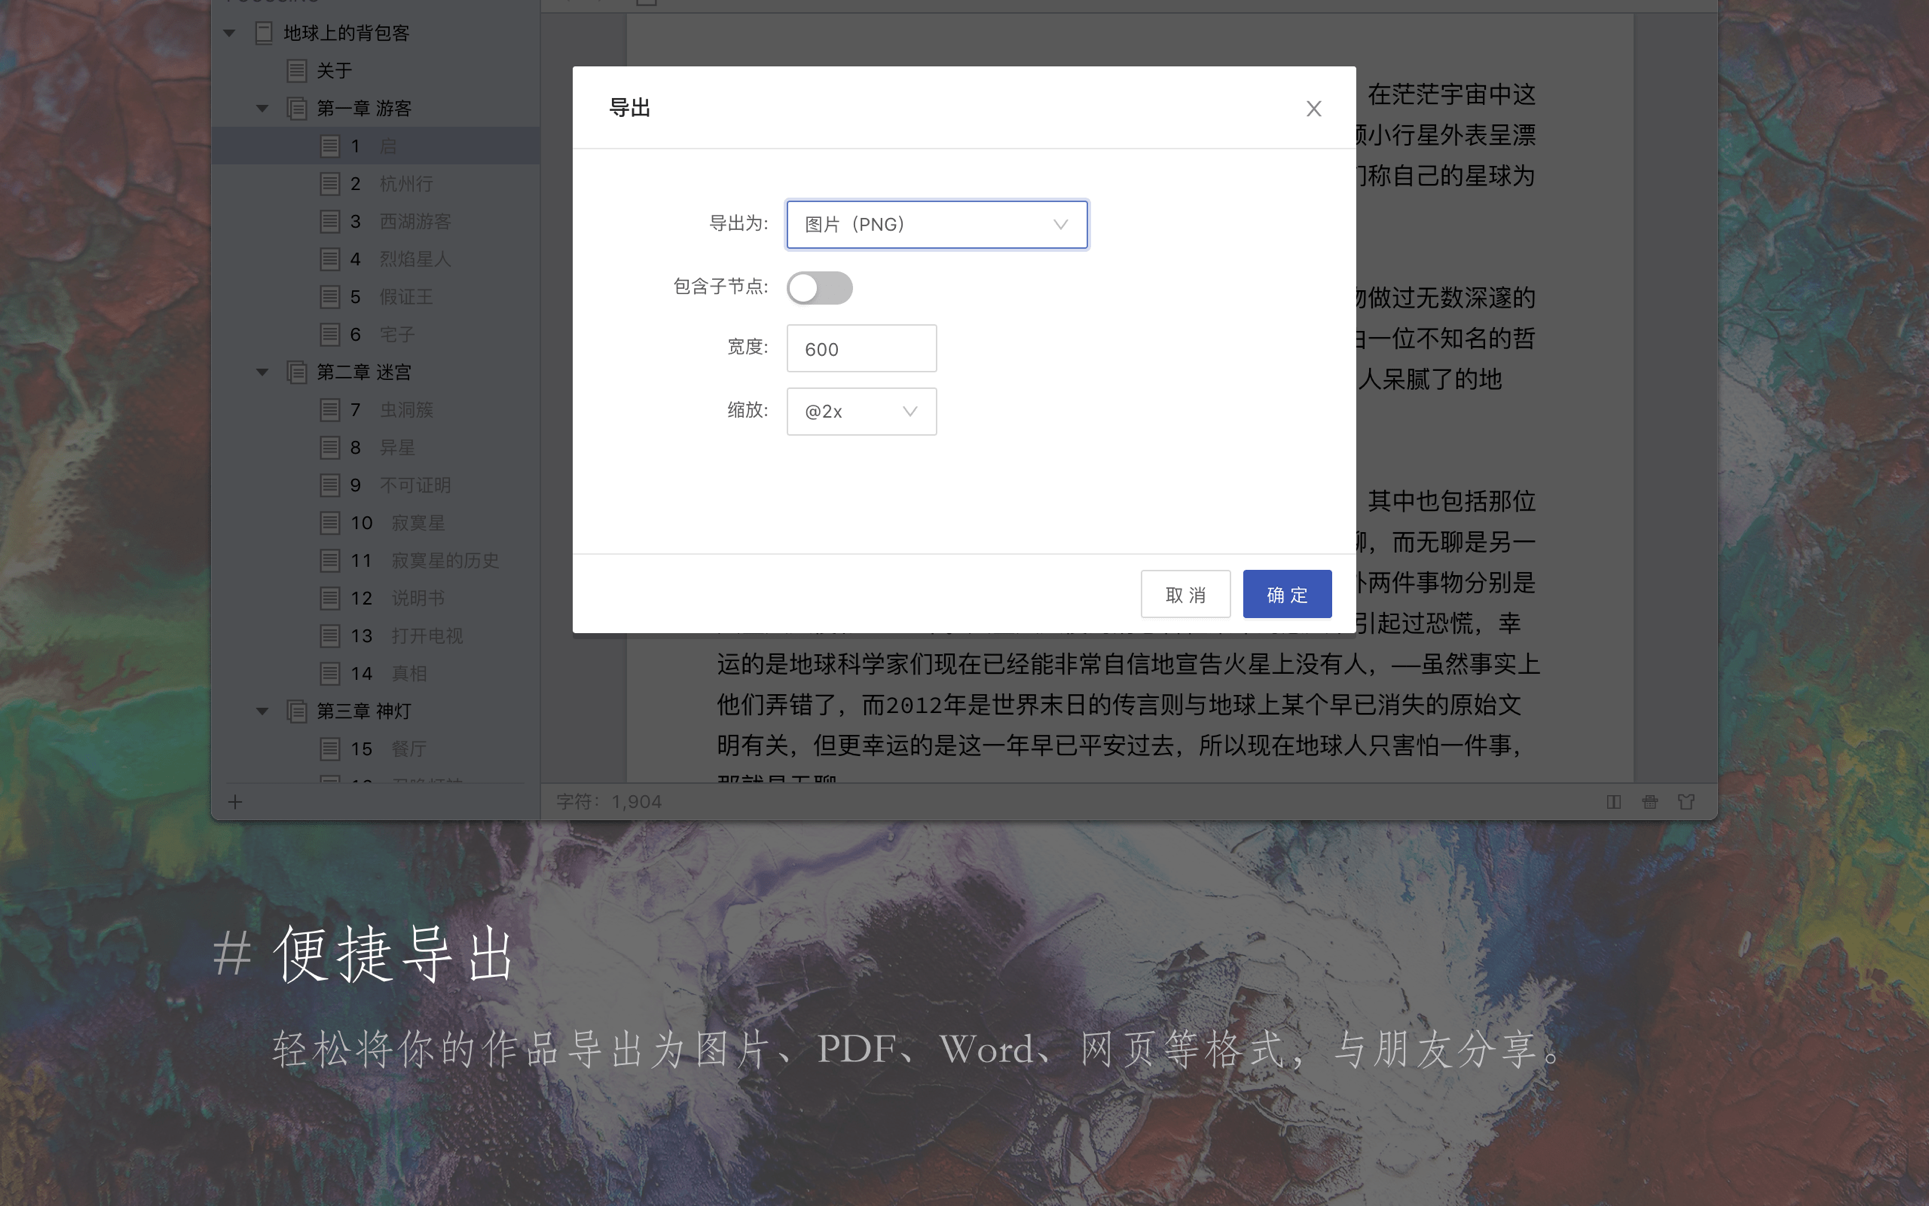 妙笔 WonderPen for Mac 2.3.1 中文破解版 优秀的文本写作工具